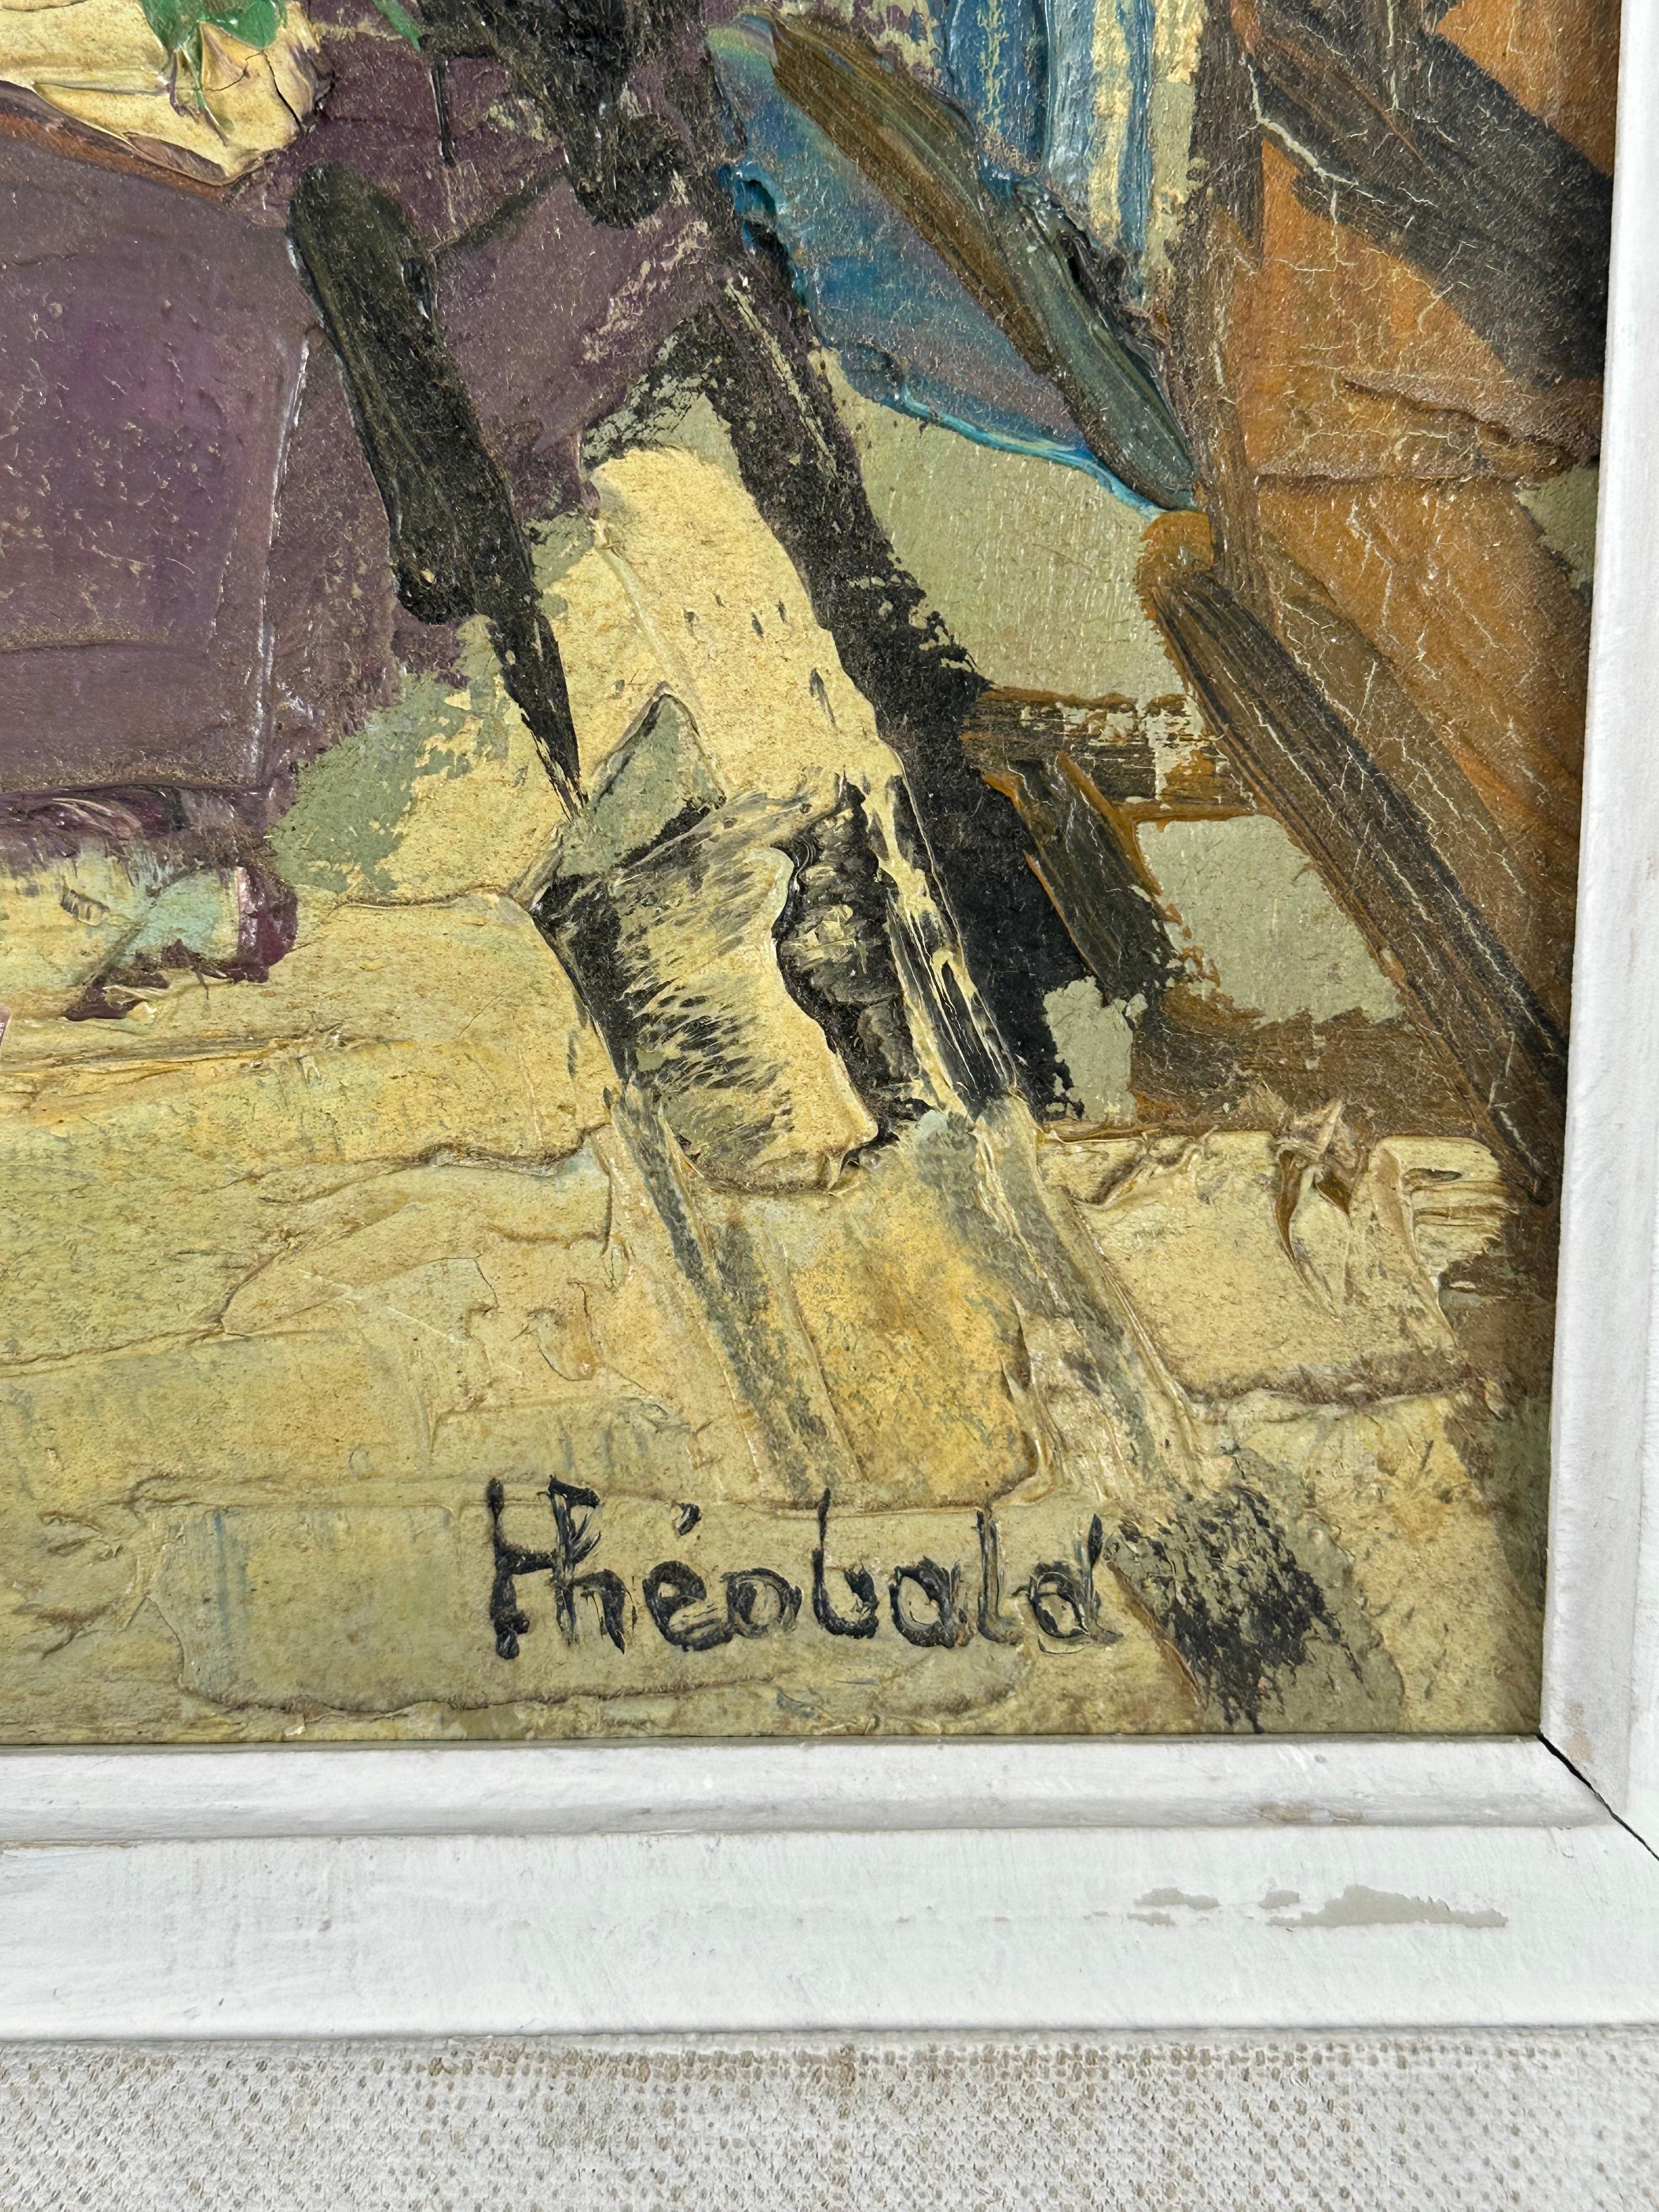 Renee Theobald (1926-2014). Passage, ca. 1965. Öl auf Leinwand, 13 x 16 Zoll, 18,5 x 21,5 Zoll gerahmt. Das Gemälde ist in ausgezeichnetem Zustand; der Rahmen hat kleinere Schäden und wurde übermalt, gehört aber zum Originalwerk. 


Studium an der